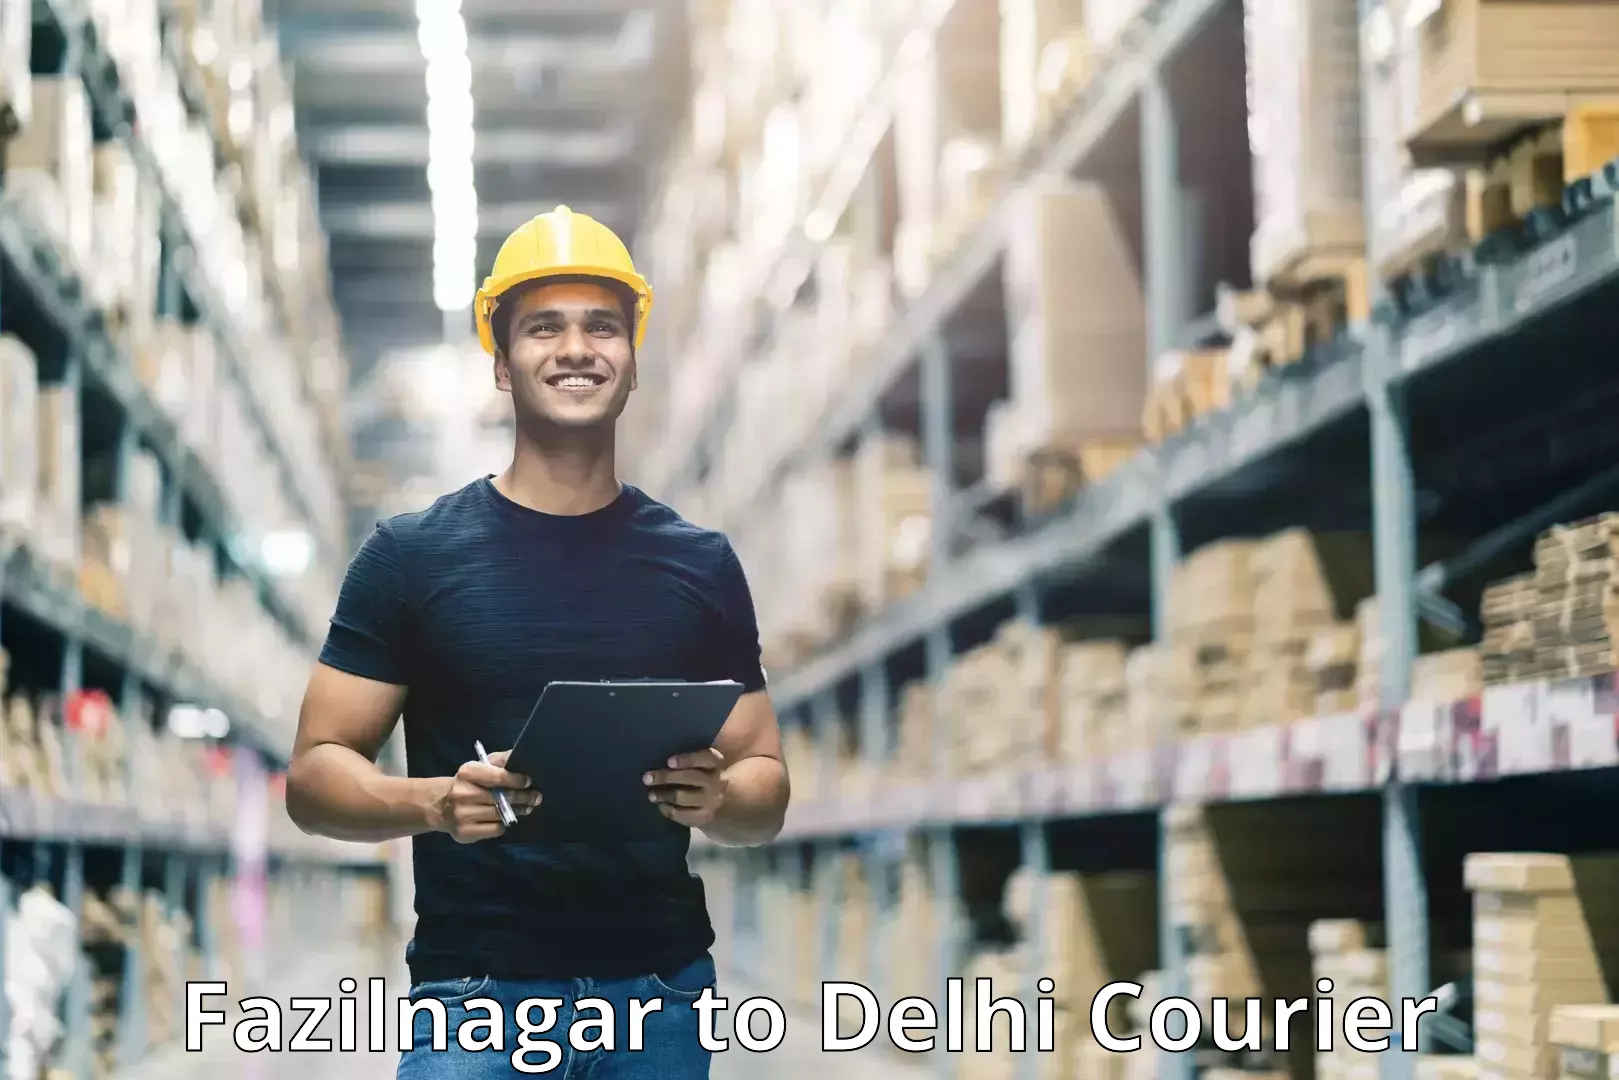 Courier app Fazilnagar to East Delhi